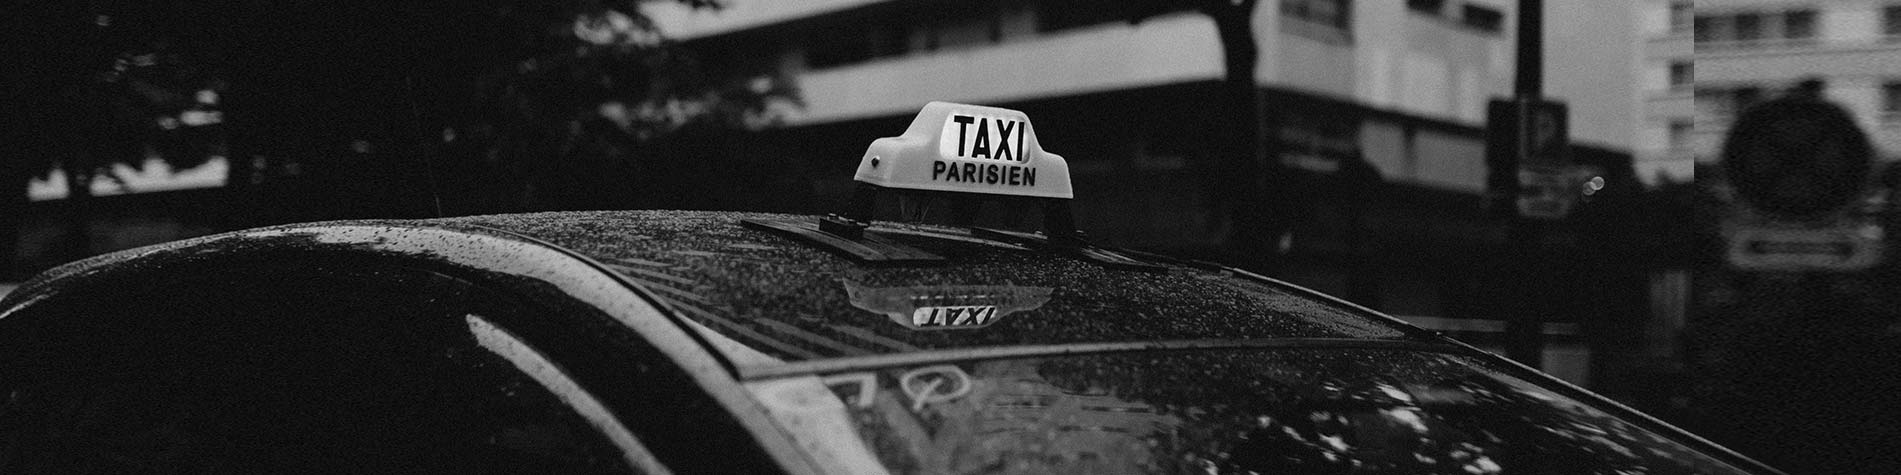 taxi-parisien